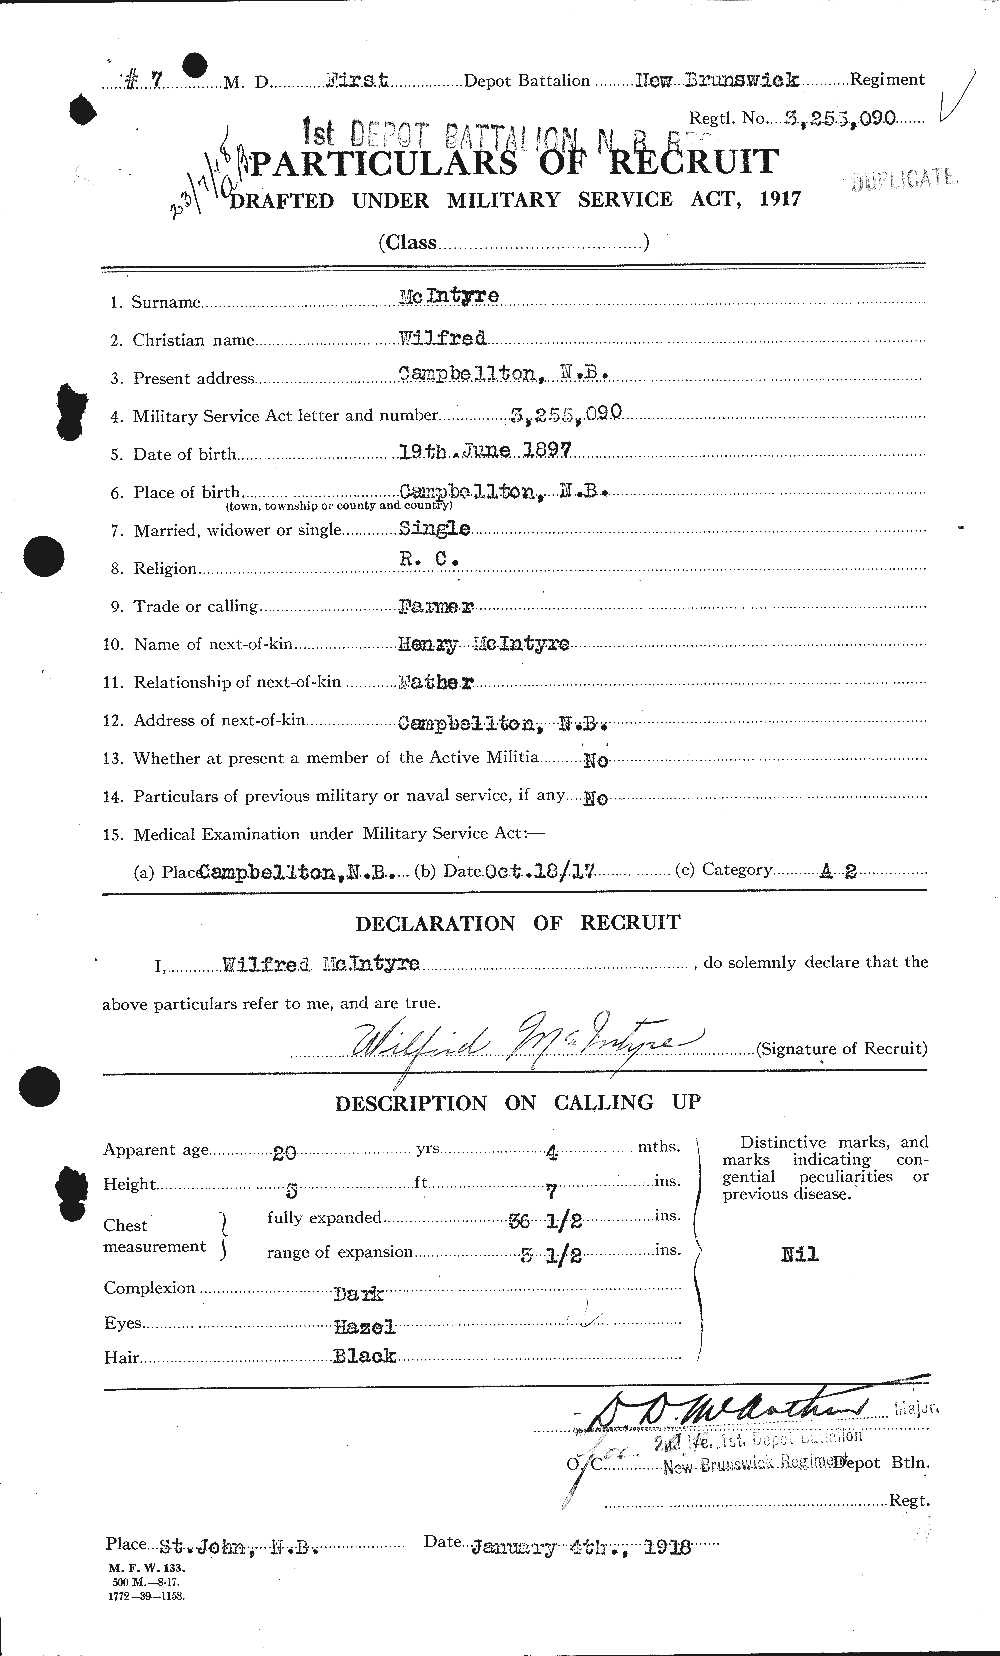 Dossiers du Personnel de la Première Guerre mondiale - CEC 527612a